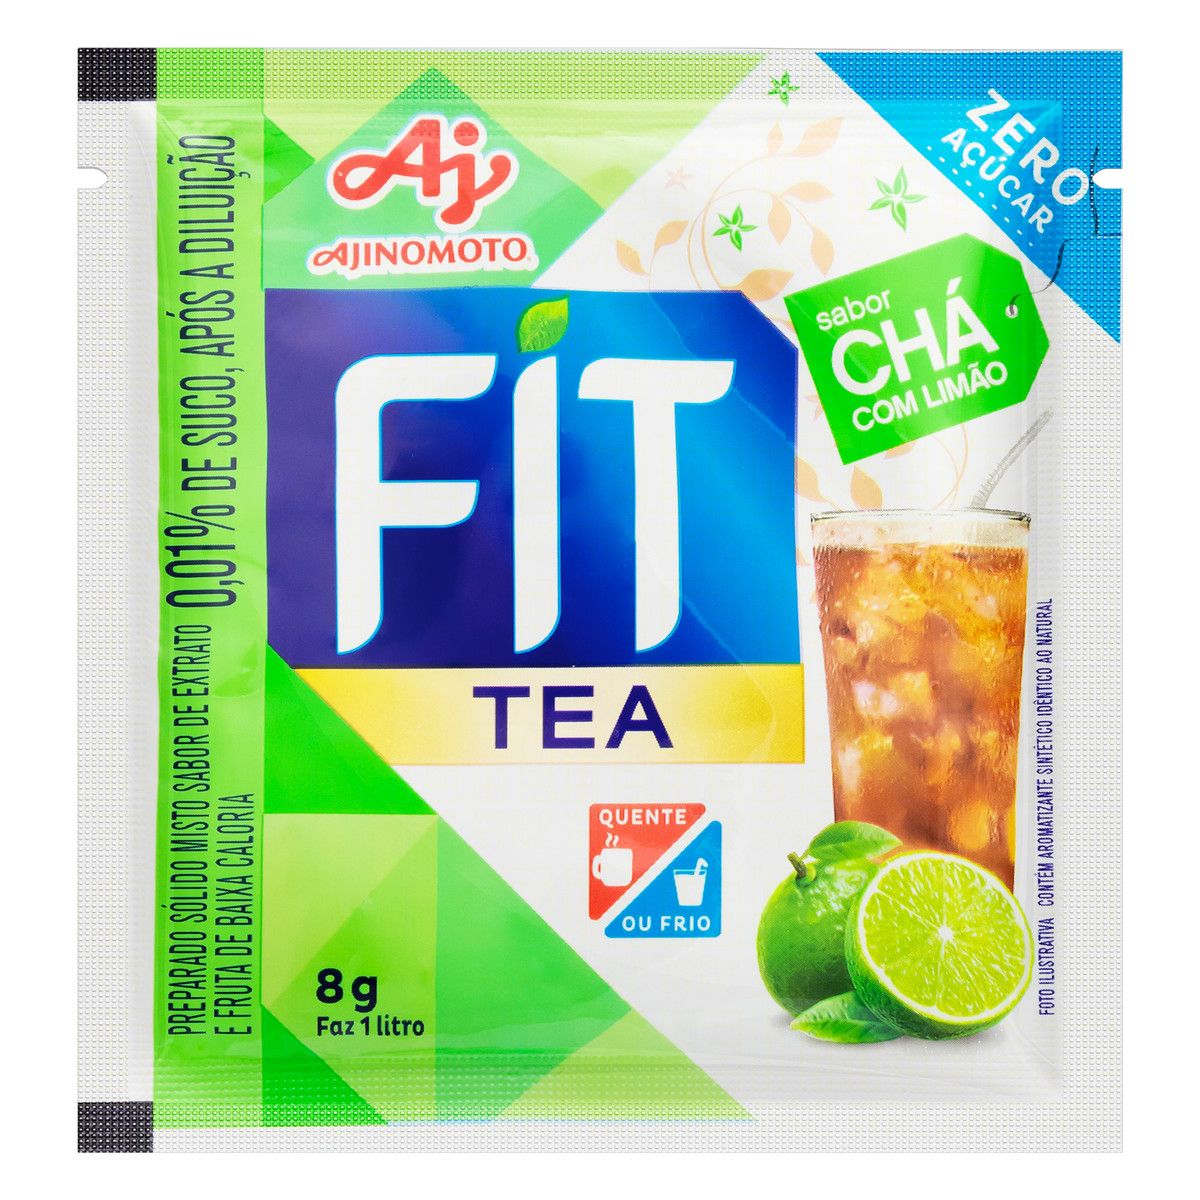 Refresco em Pó Chá com Limão Zero Açúcar Fit Tea Pacote 8g